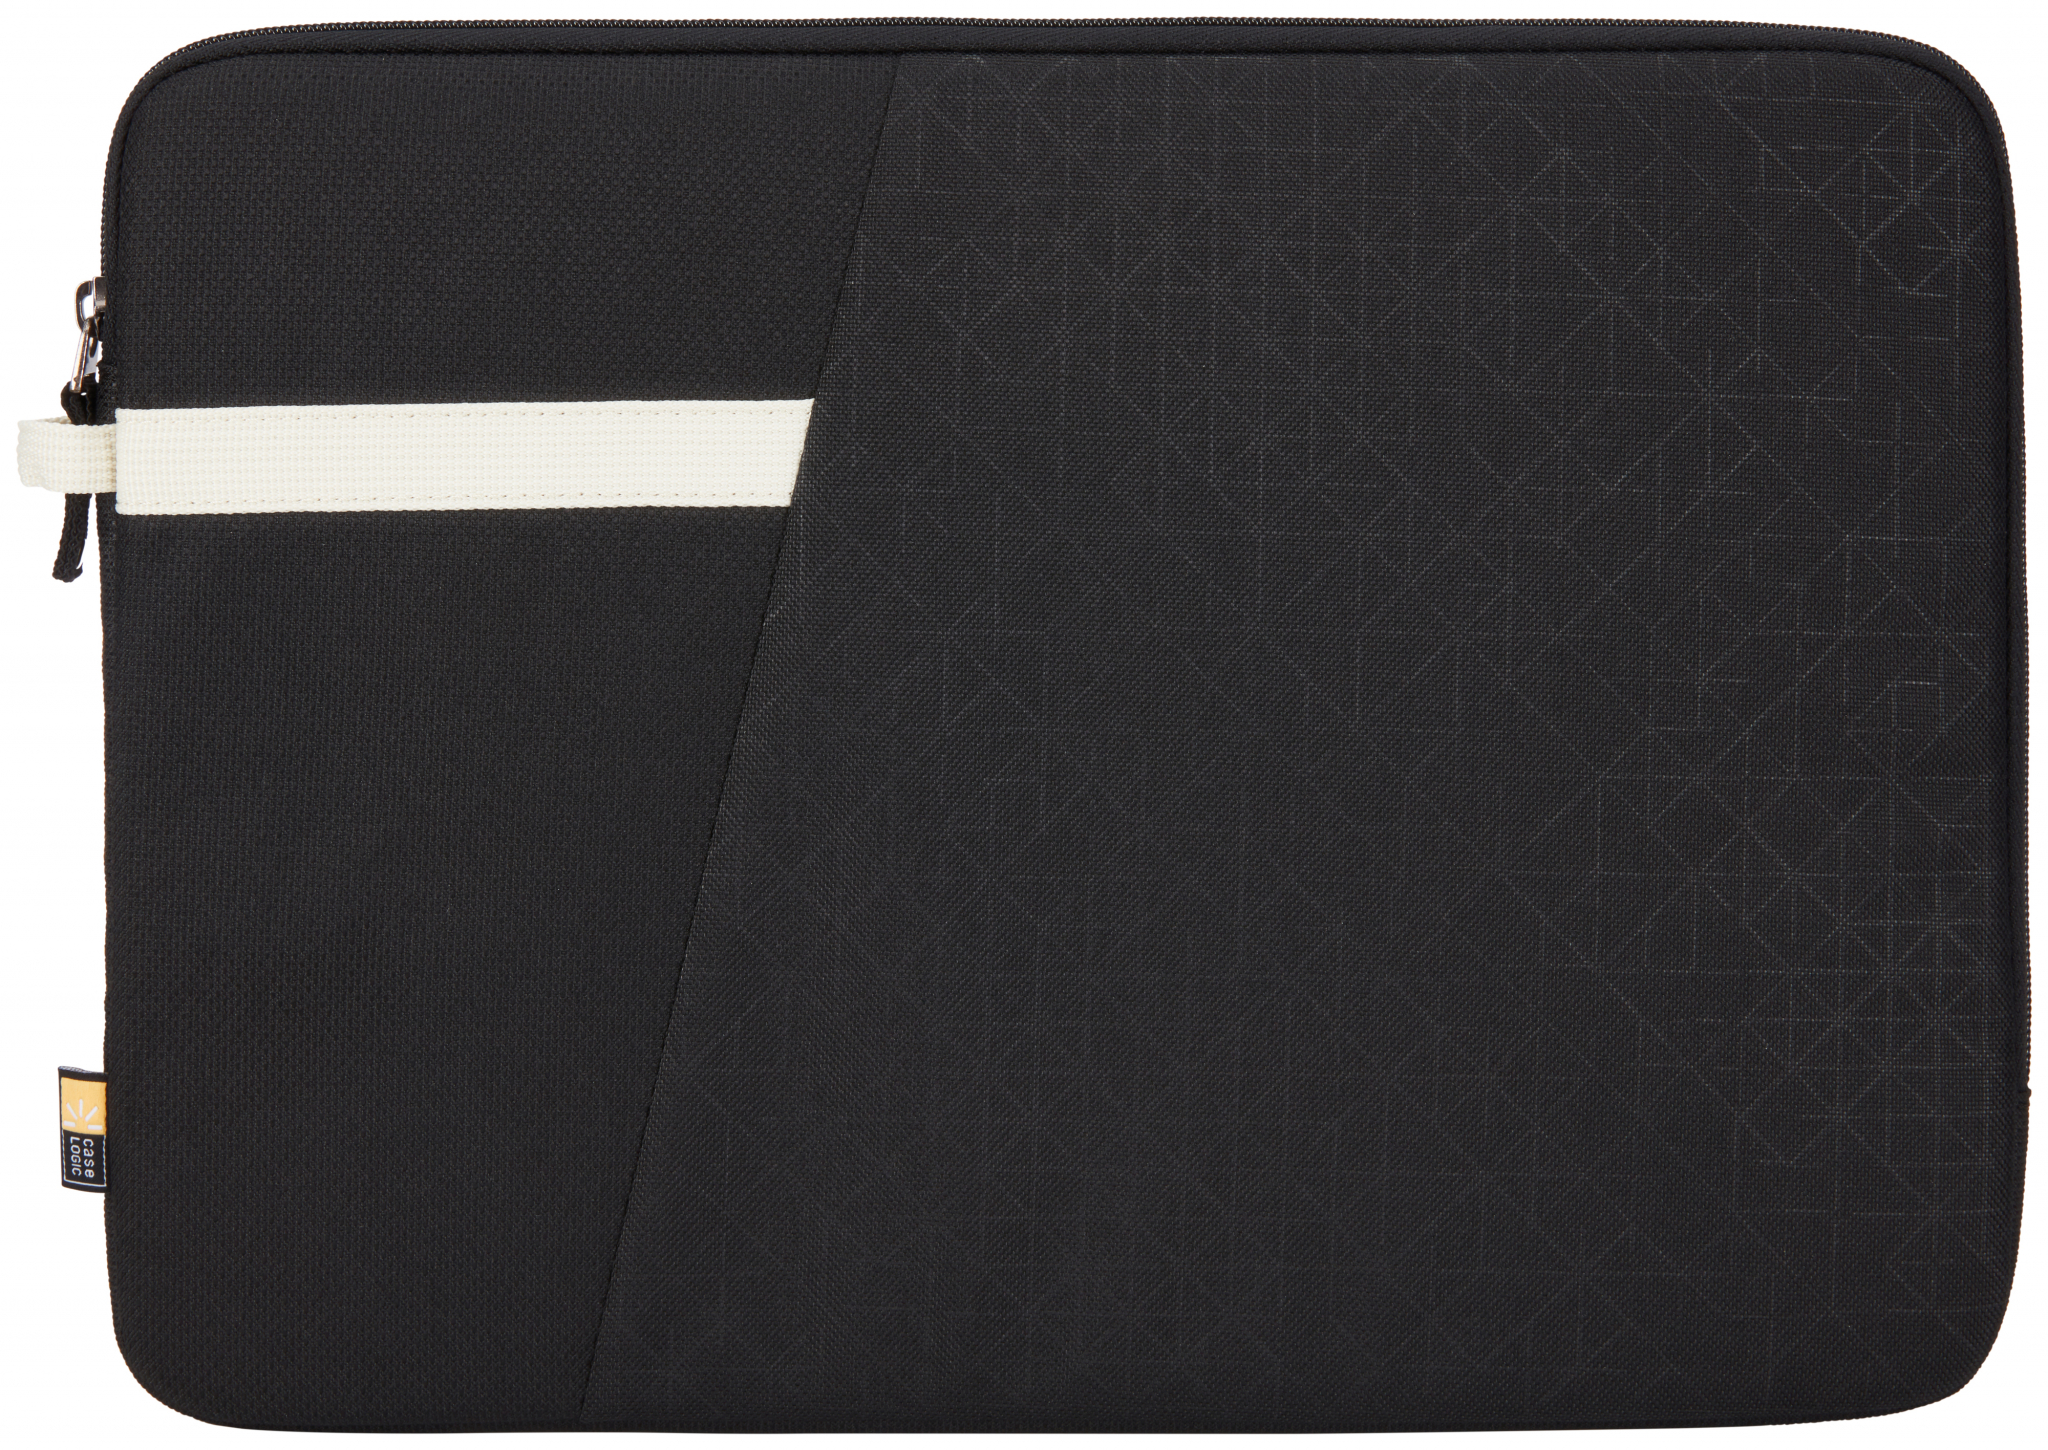 CASE LOGIC Schwarz Polyester, Notebooksleeve Universal Sleeve für Ibira